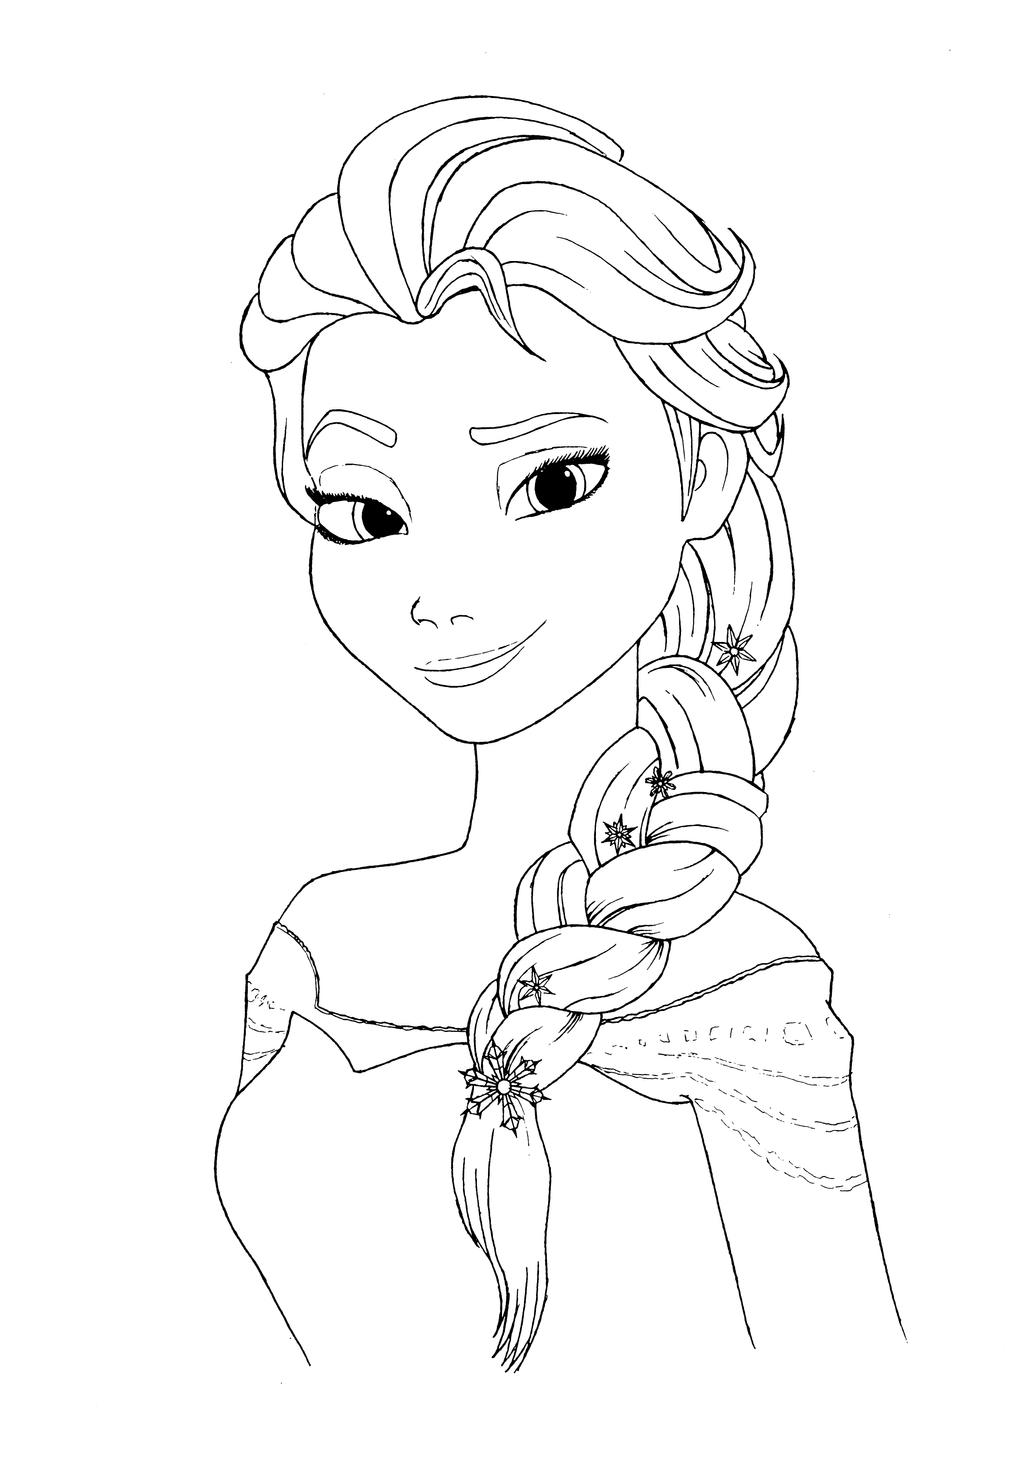 Download Elsa coloring page by Mortusk on DeviantArt